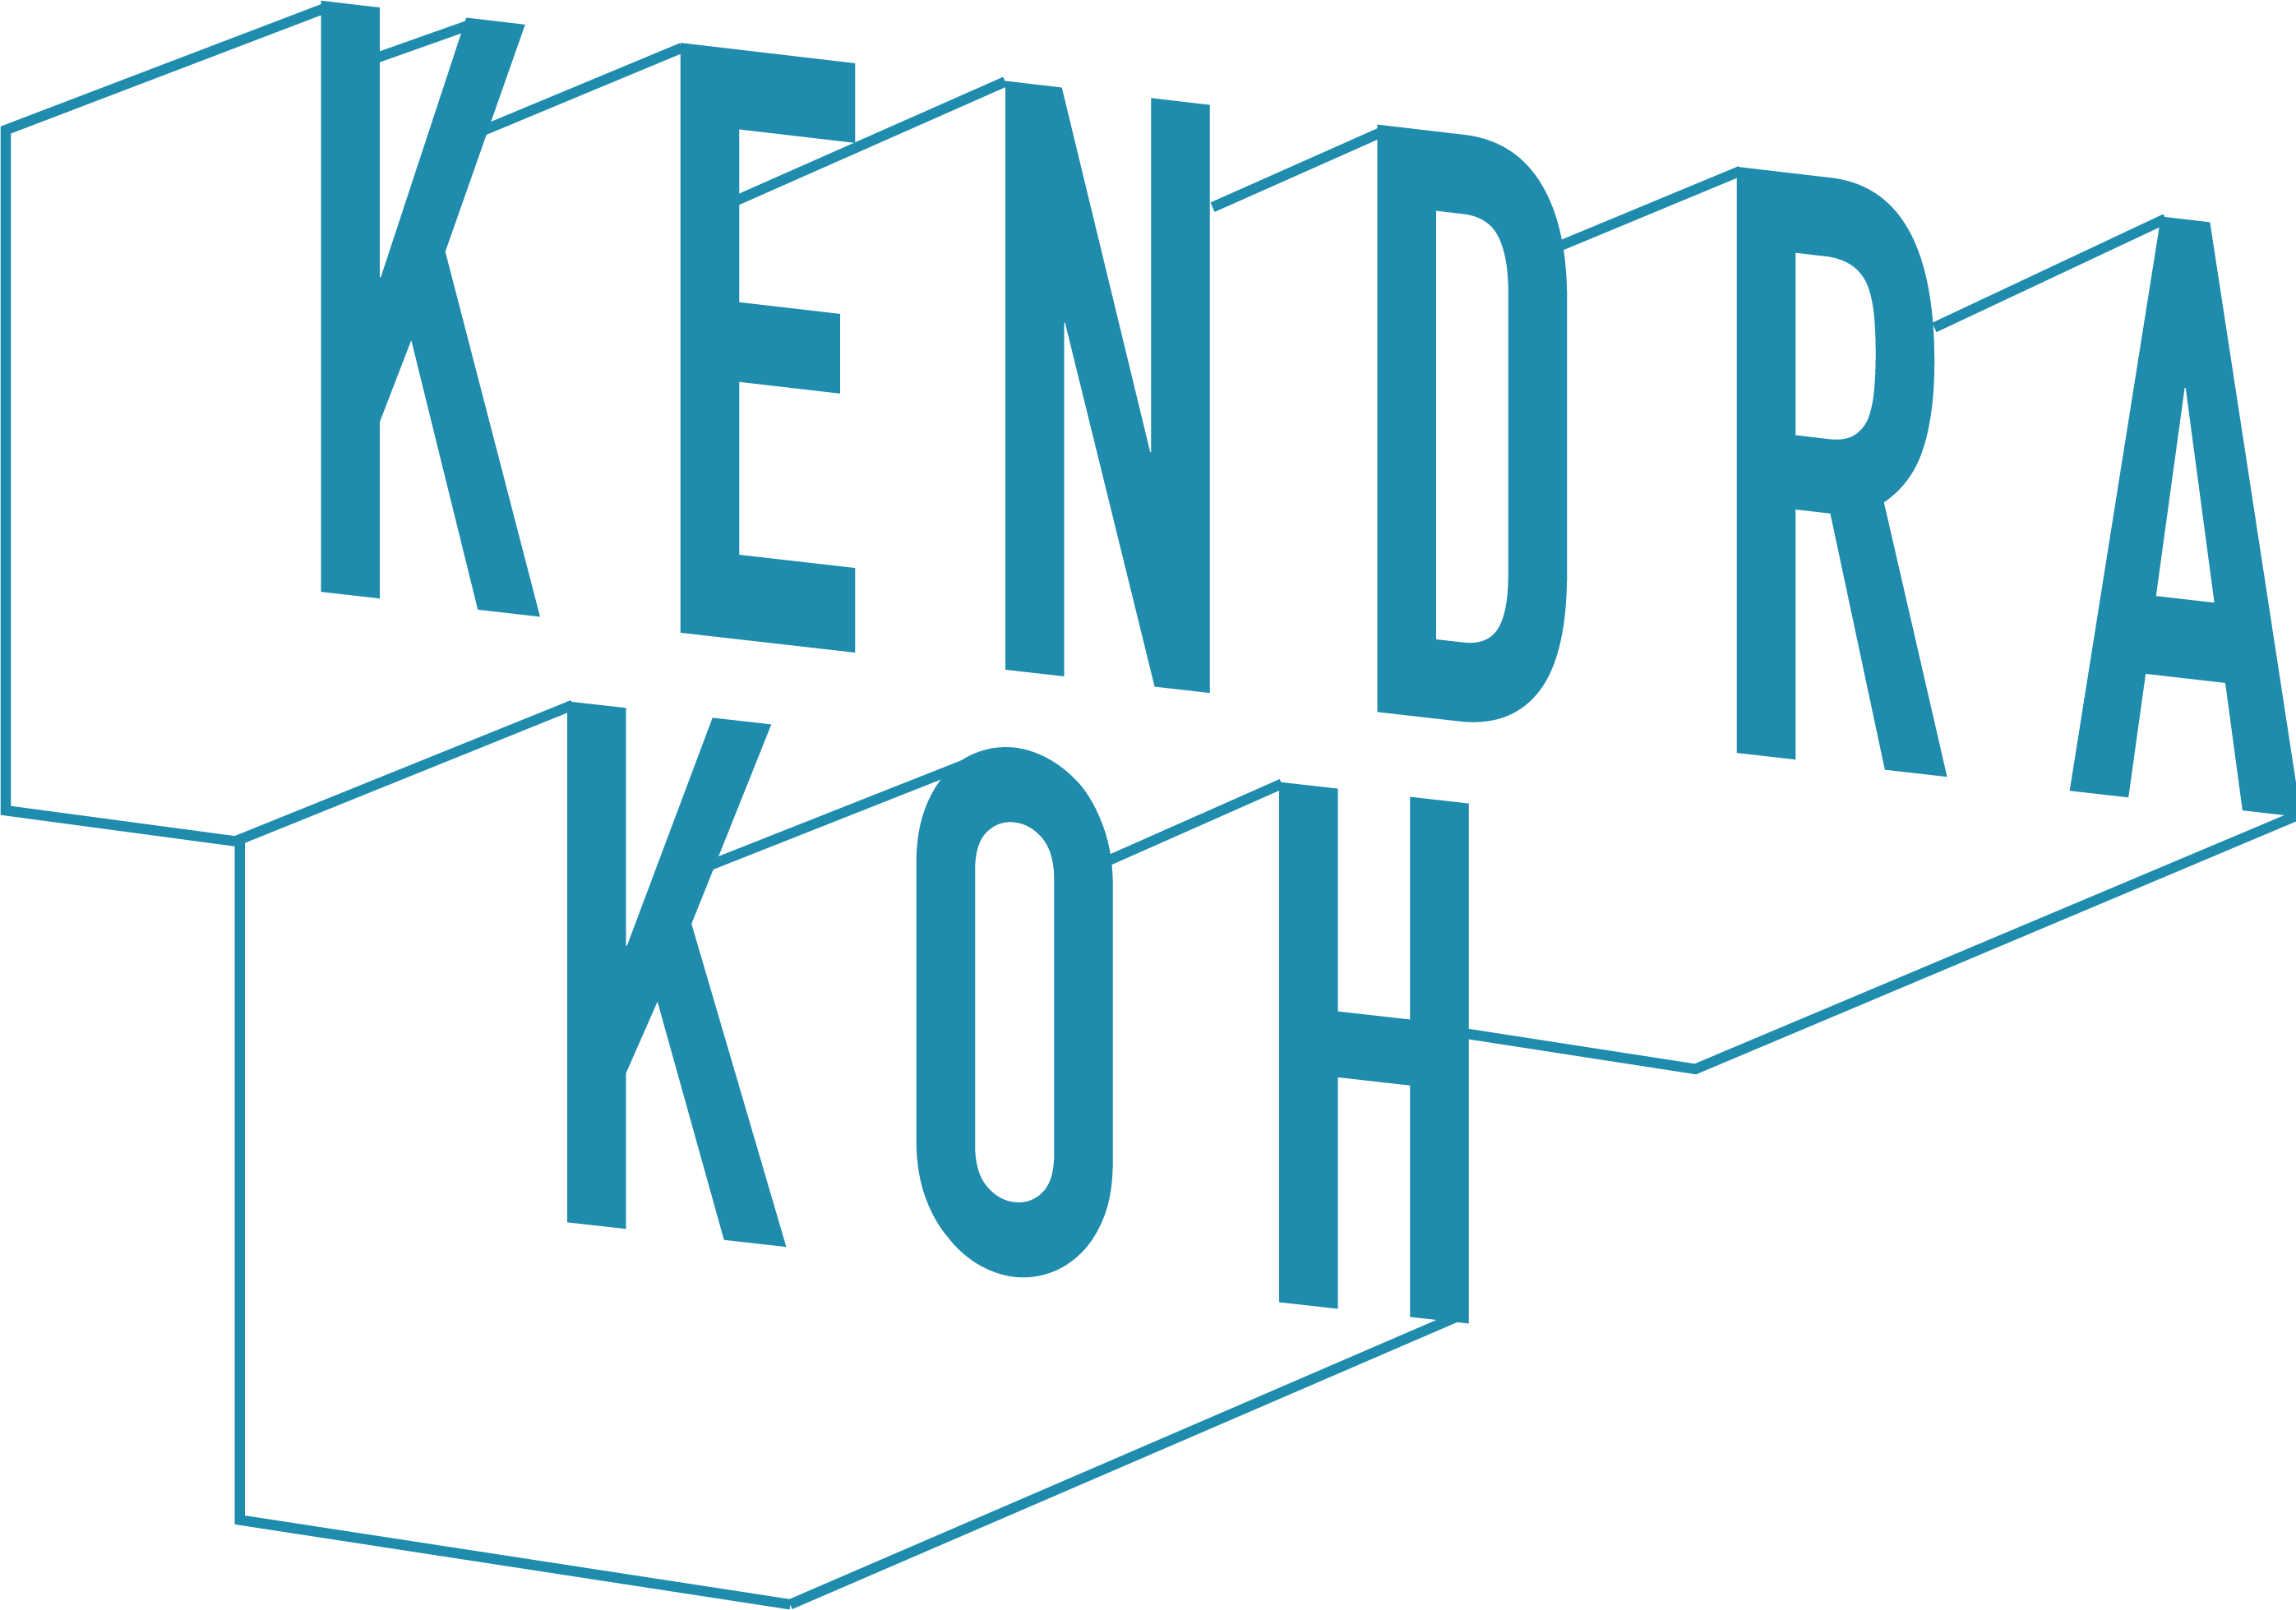 Kendra Koh